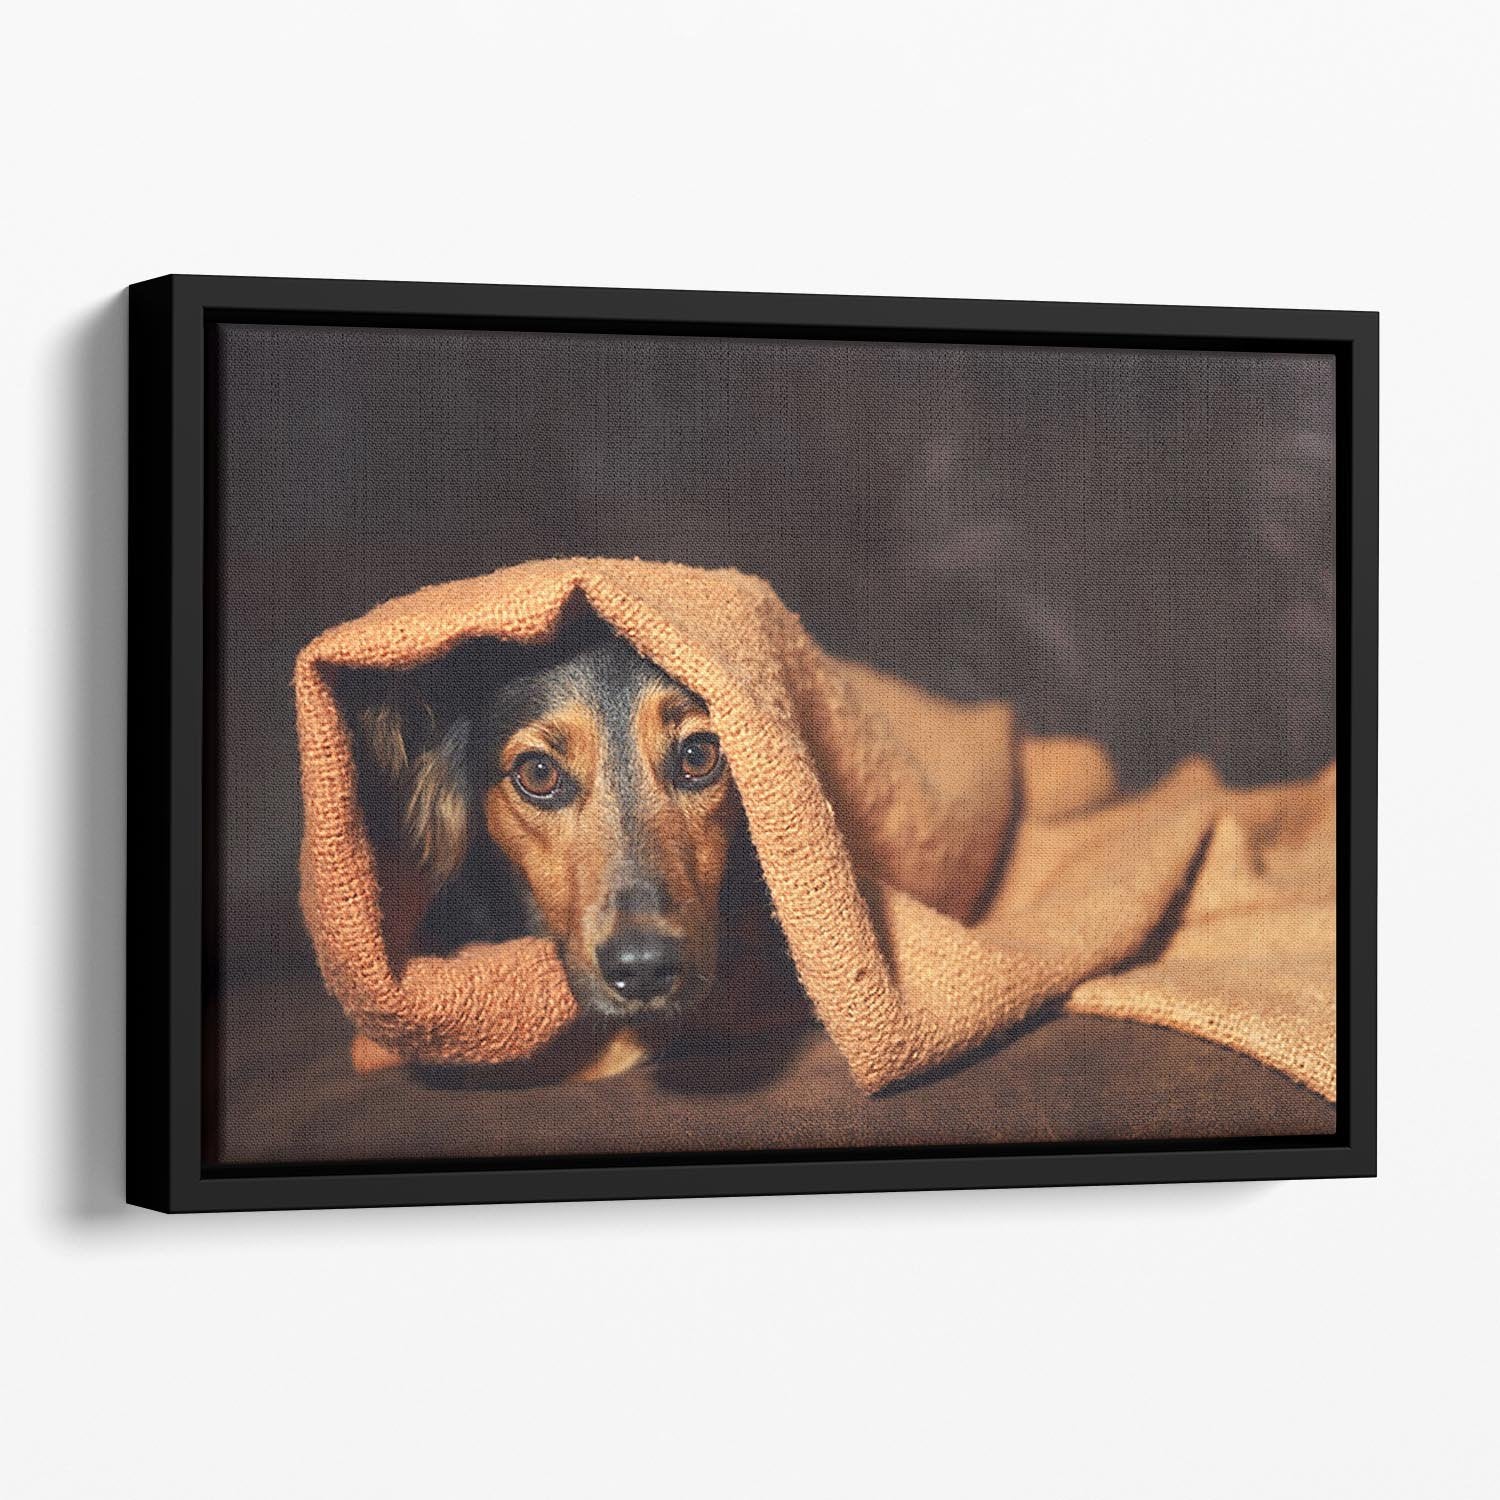 Small black and brown dog hiding under orange blanket Floating Framed Canvas - Canvas Art Rocks - 1